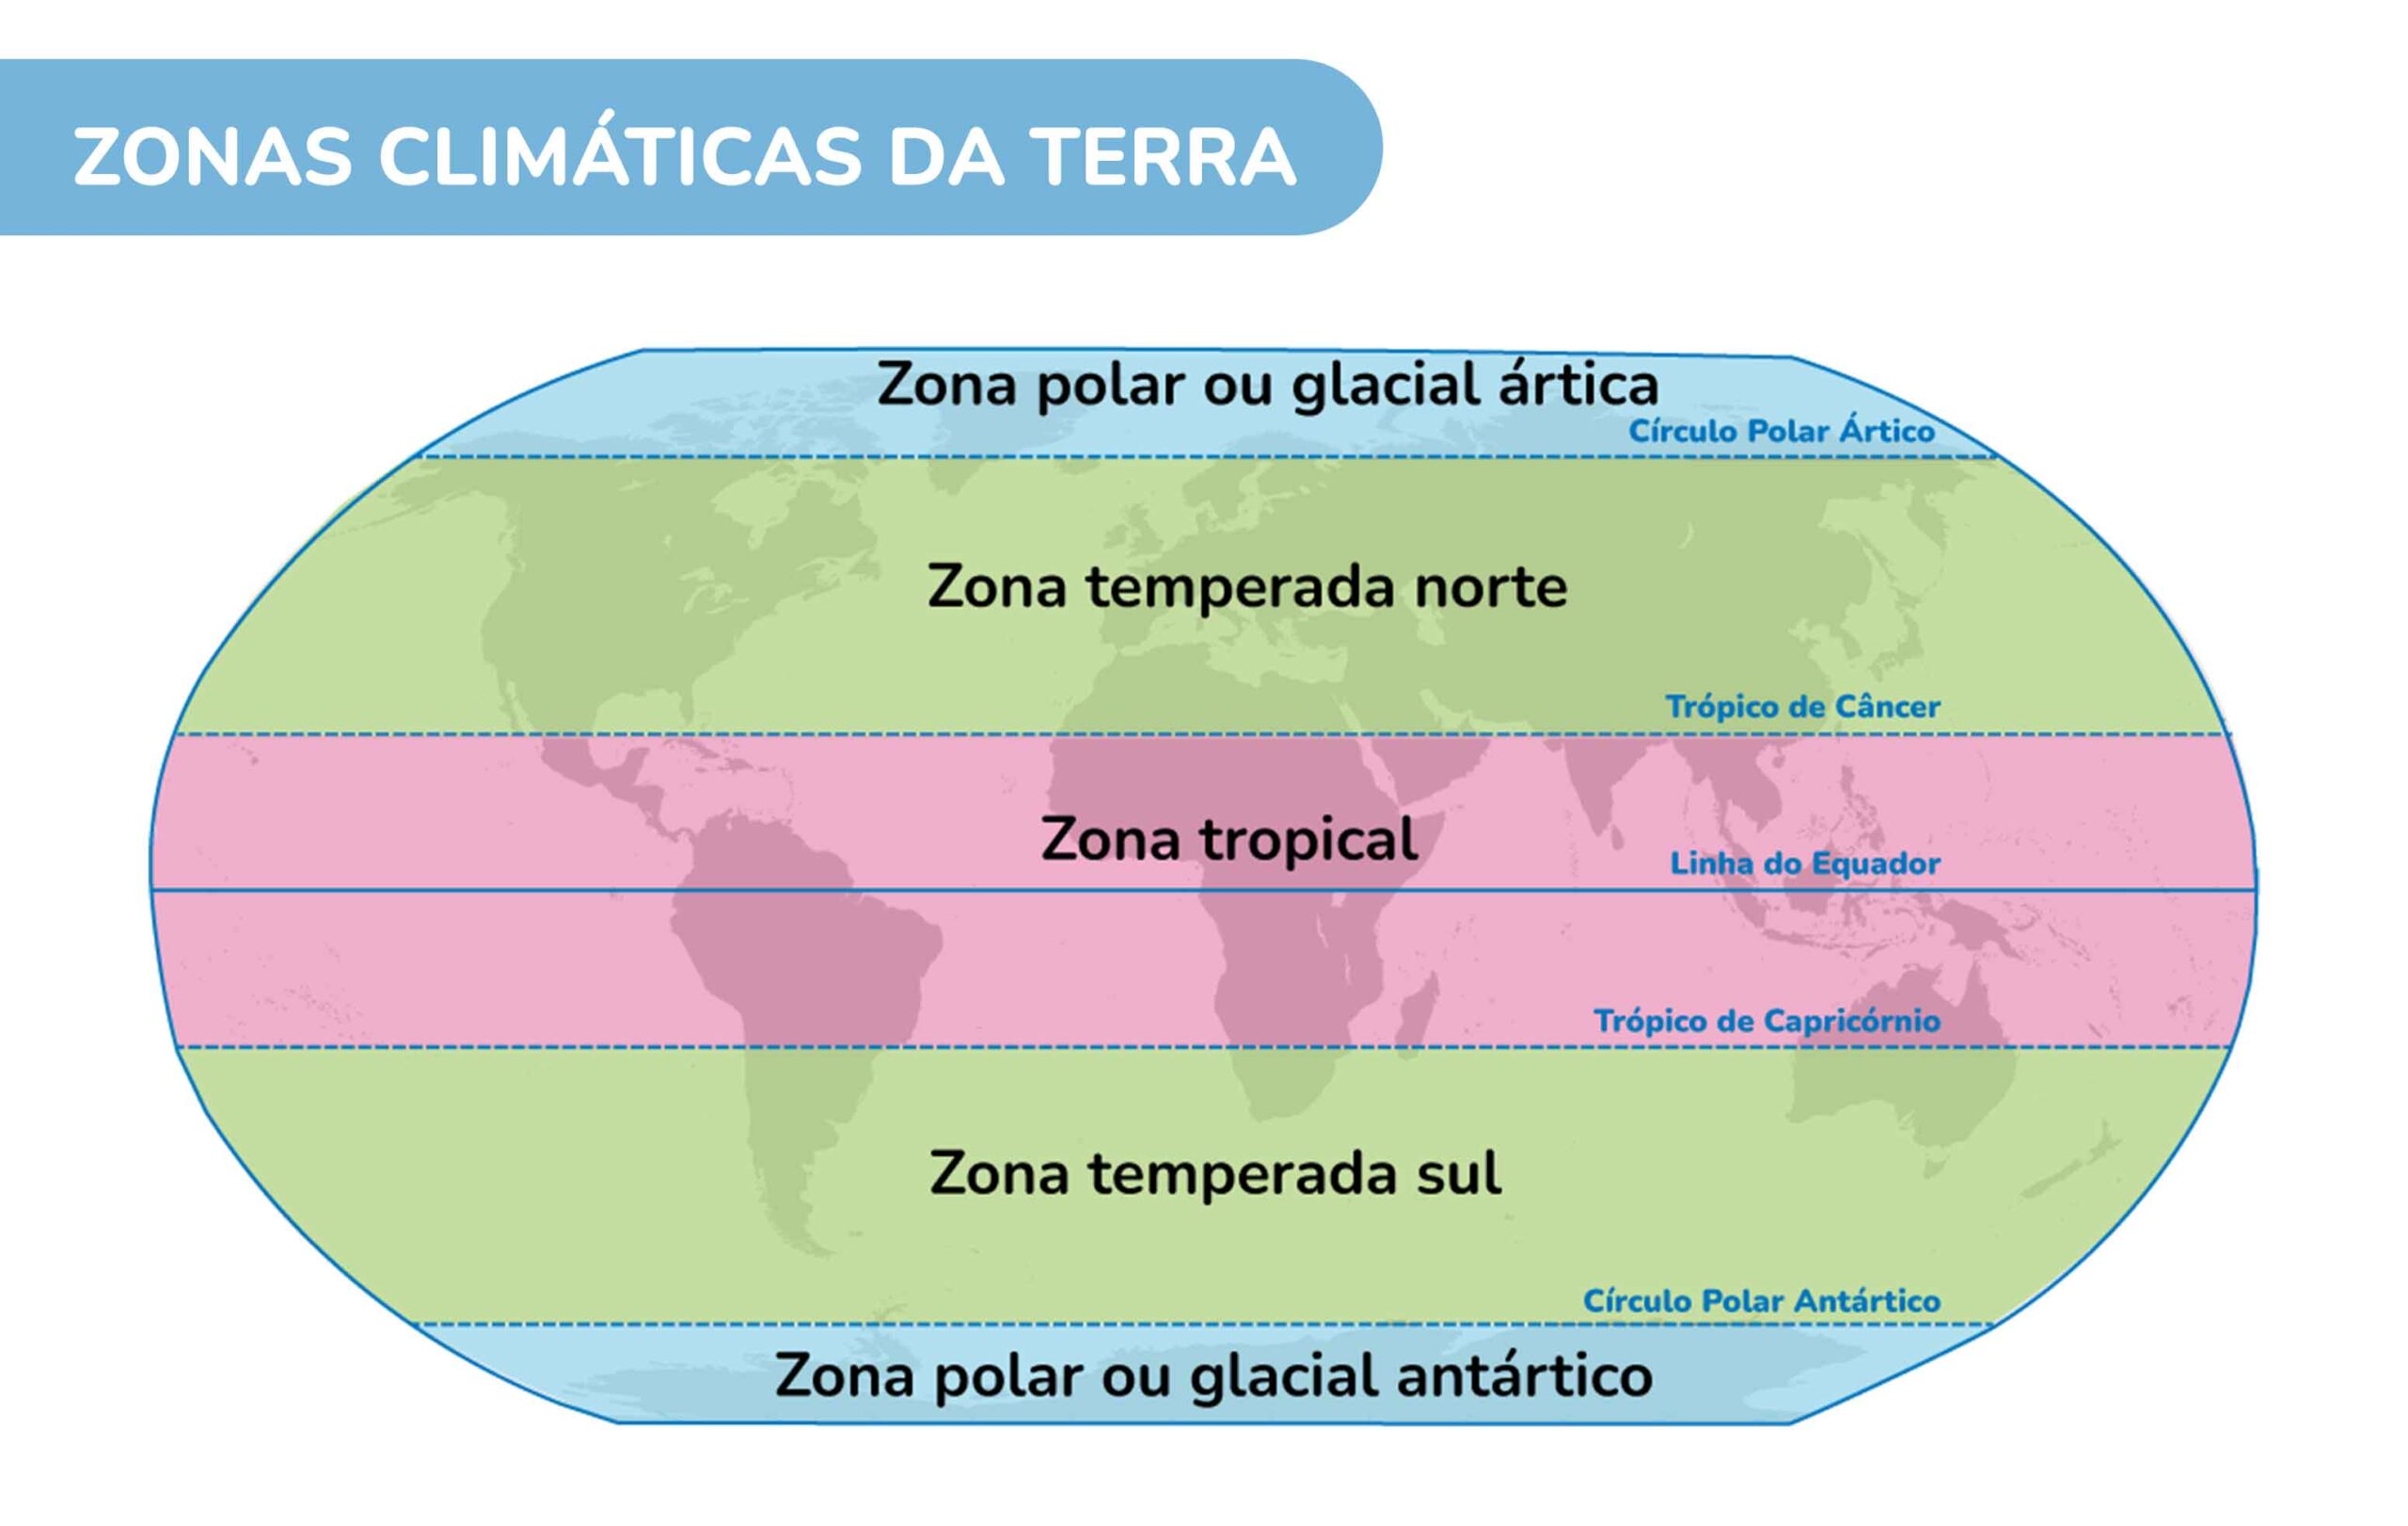 Imagem mostra mapa mundi dividido em zonas climáticas. De cima para baixo, temos, em ordem, zona polar ou glacial ártica, zona temperada norte, zona tropical, zona temperada sul e zona polar ou glacial antártico.